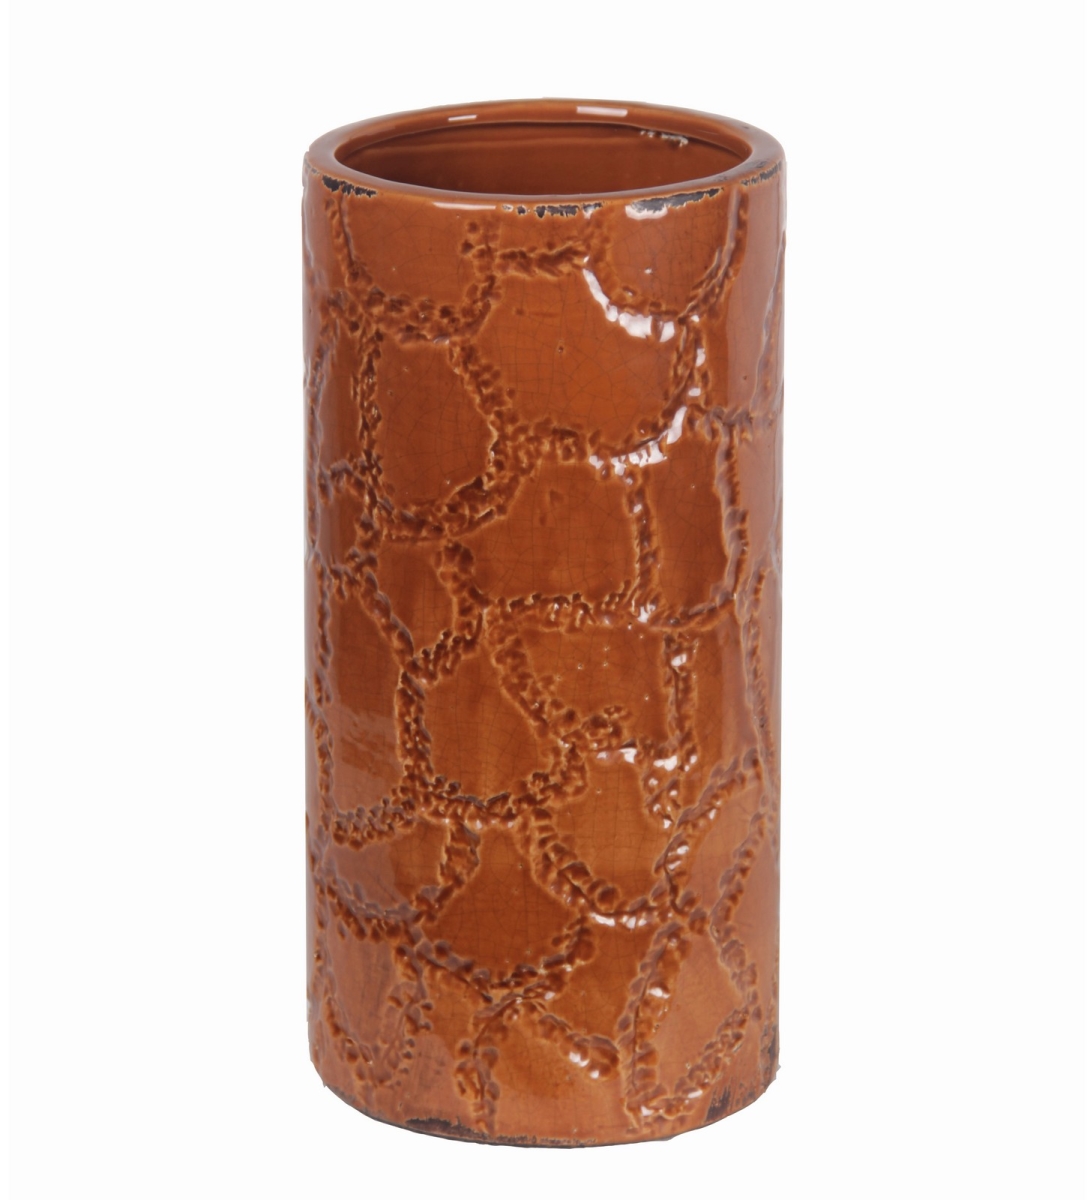 86026 6.5 X 6.5 X 11.5 In. Giraffe Pattern Ceramic Vase, Small